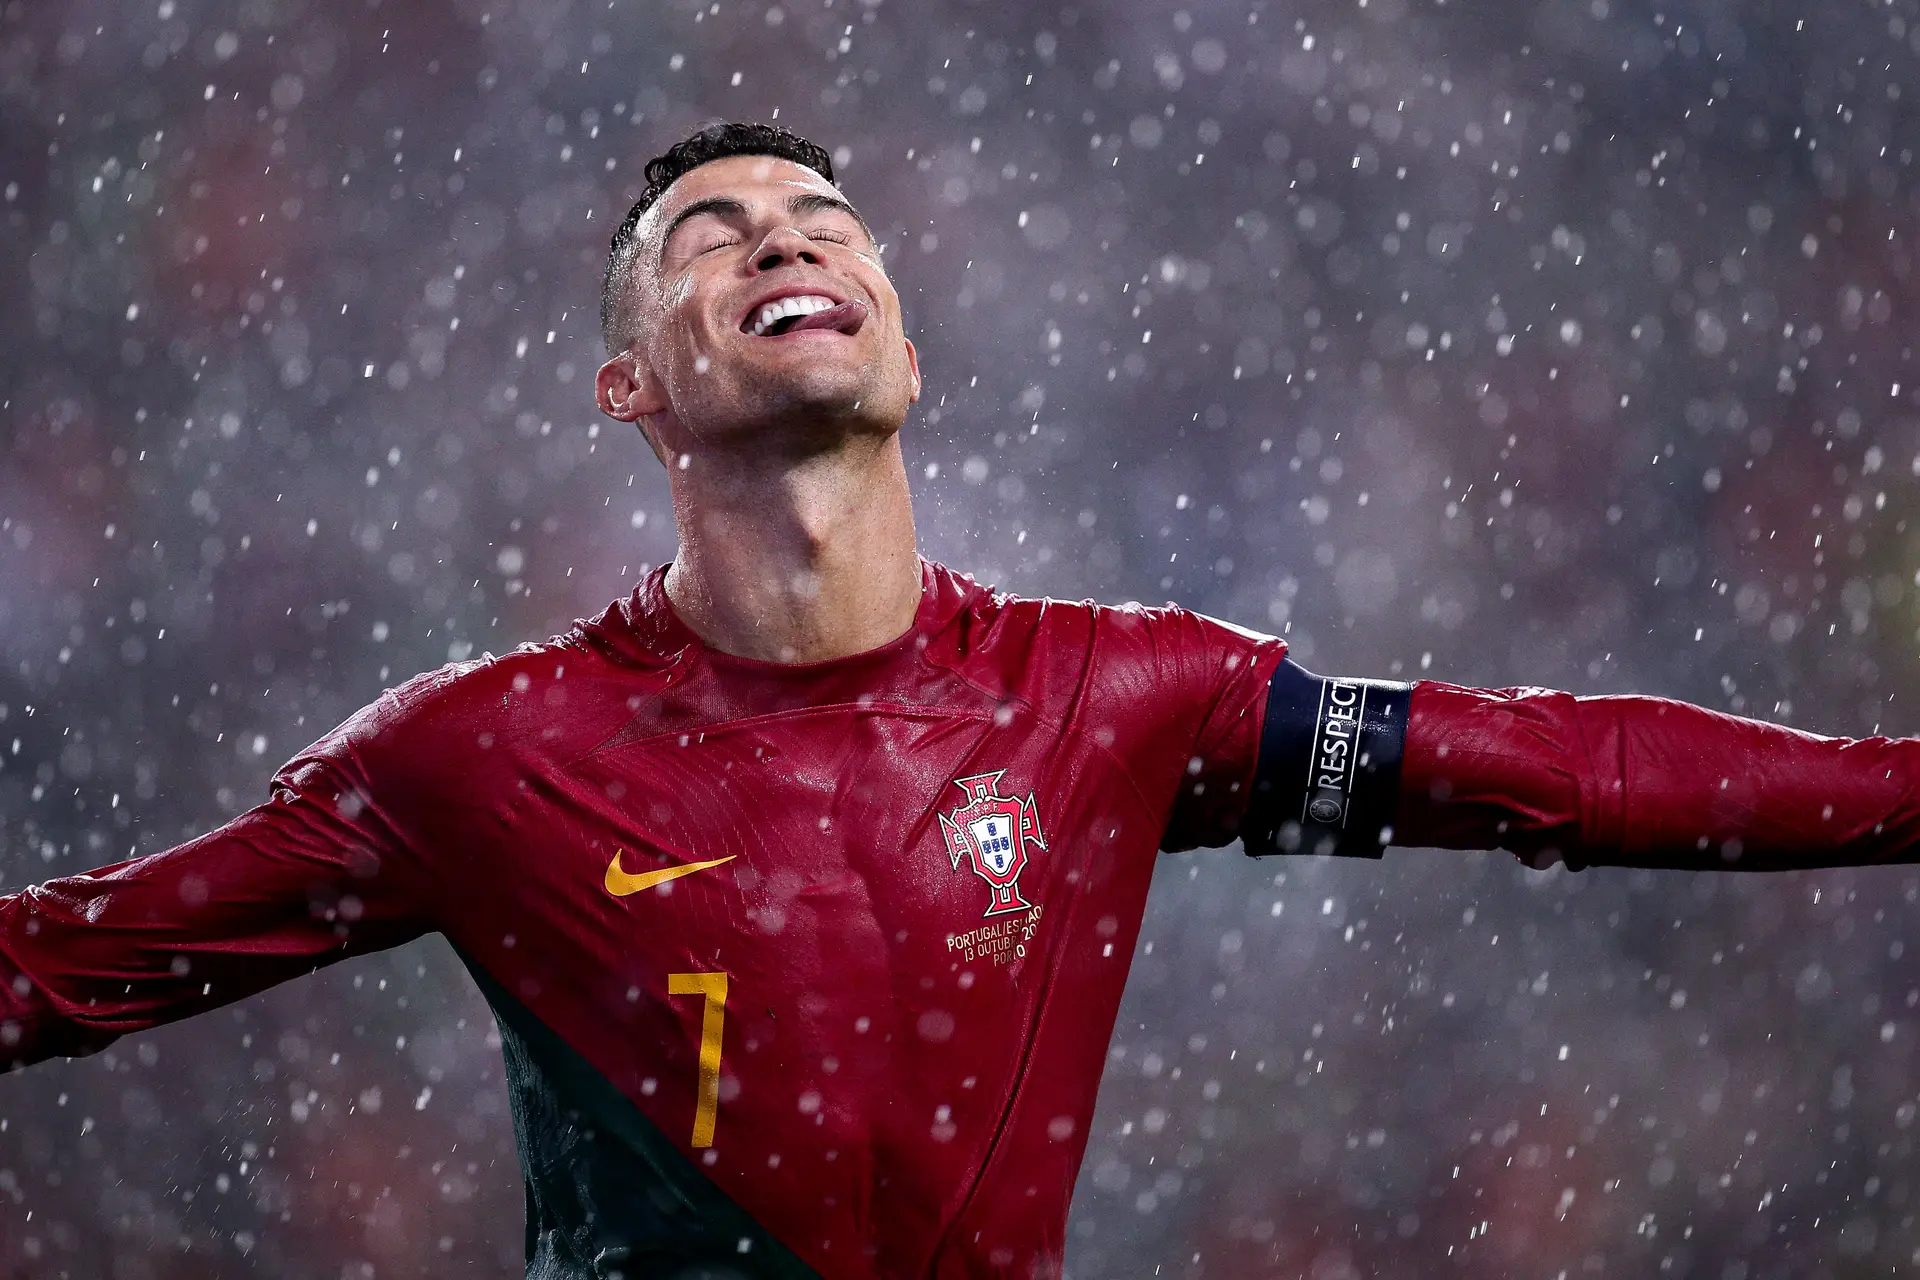 Ronaldo entre o “dia especial no futebol” e o “triste” na Madeira